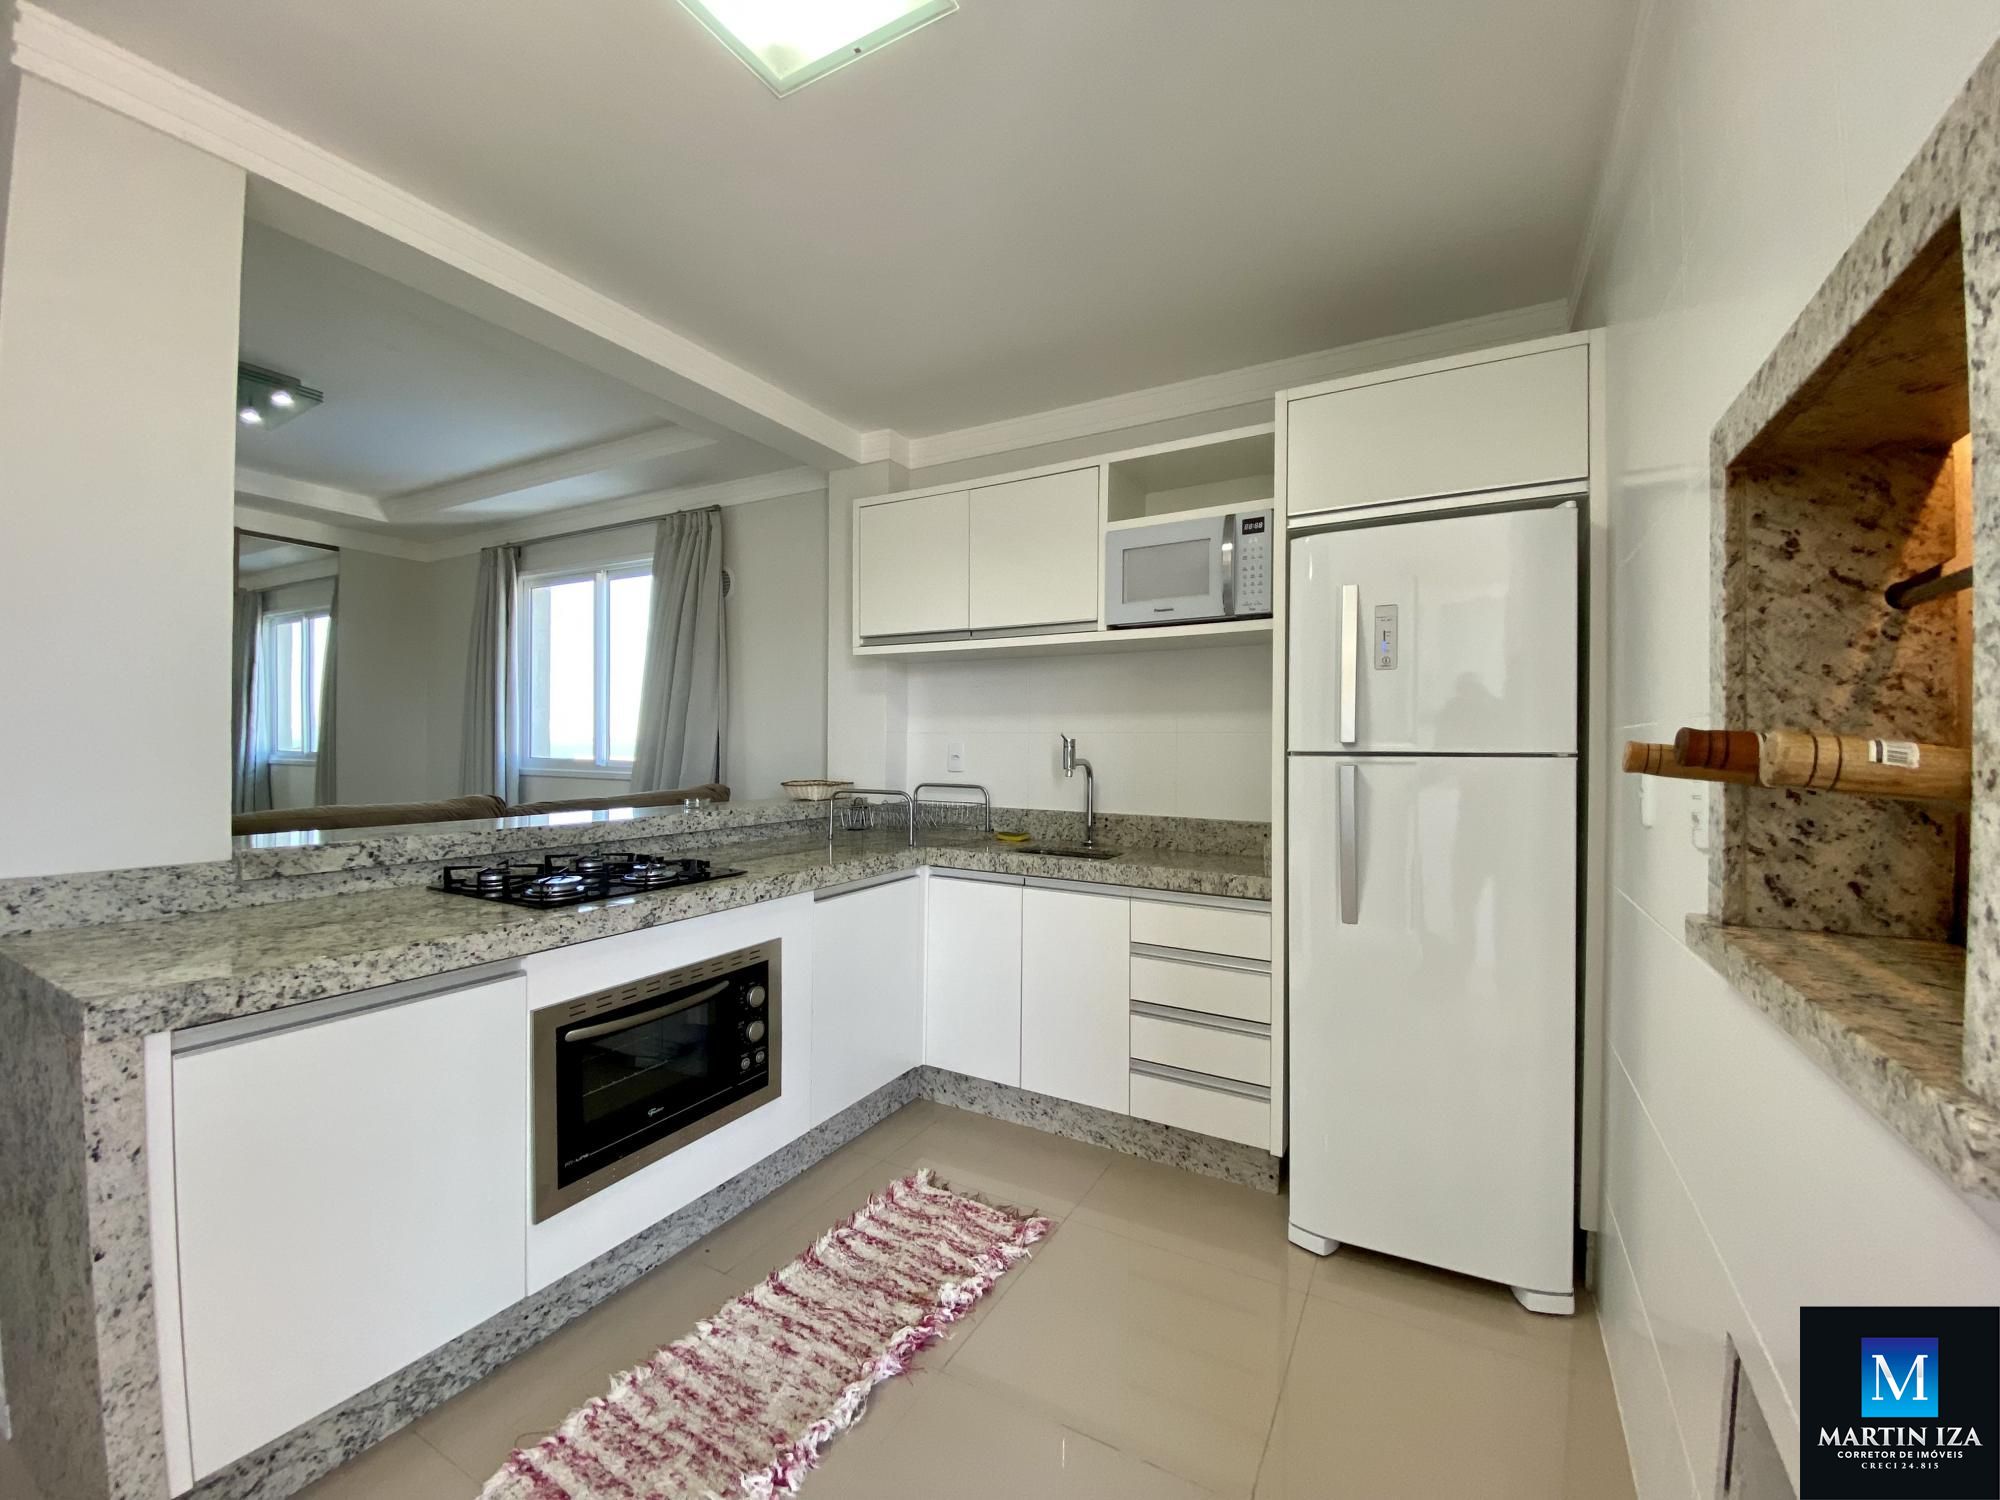 Cobertura com 3 Dormitórios para alugar, 160 m² por R$ 500,00